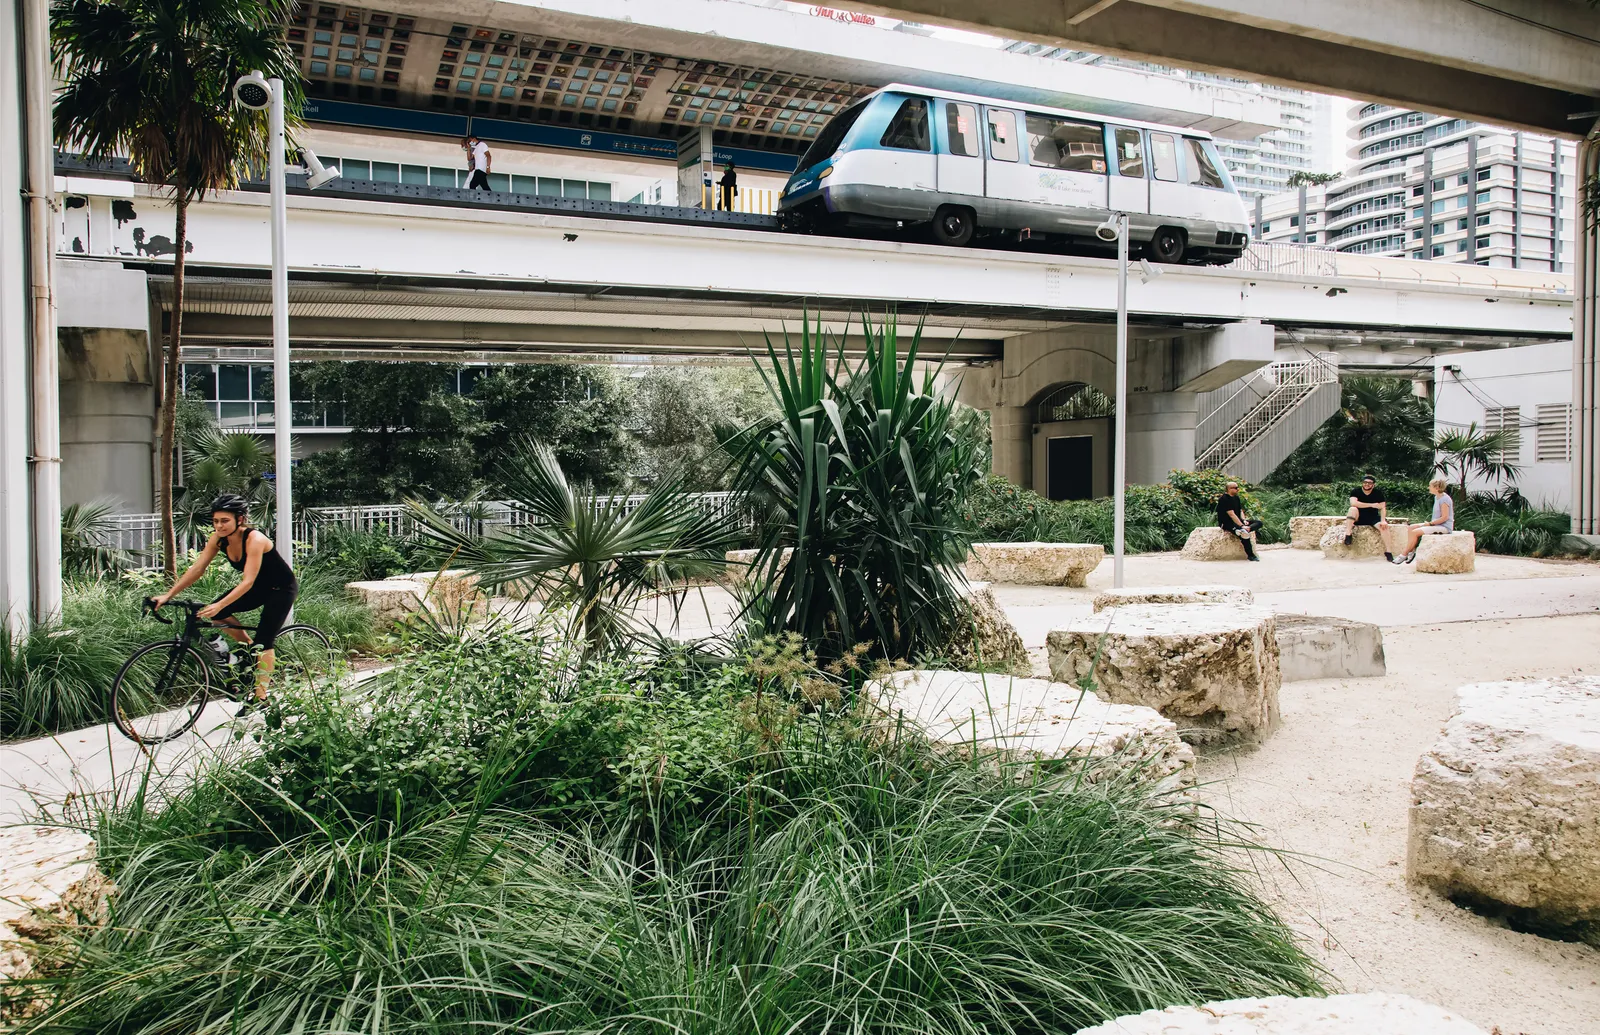 Brickell Backyard: El Nuevo Lugar de Moda en Miami Bajo las Vías del Metrorail